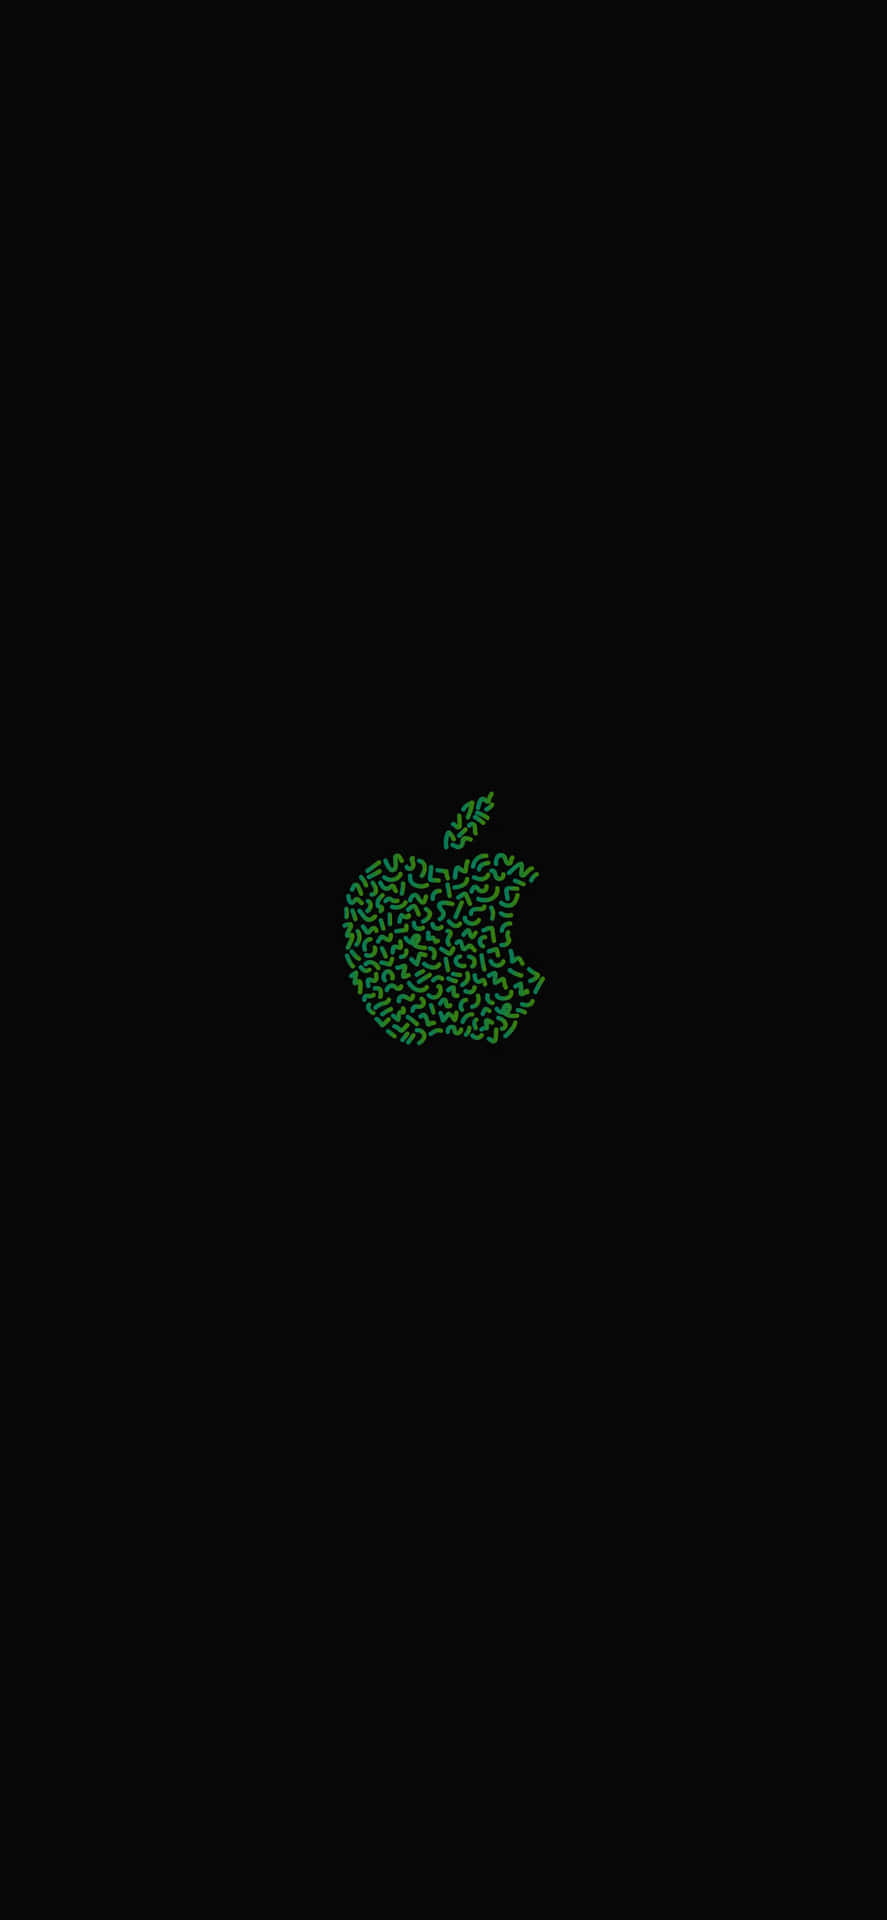 Schauensie Sich Das Neueste Olivgrüne Apple Iphone An. Wallpaper